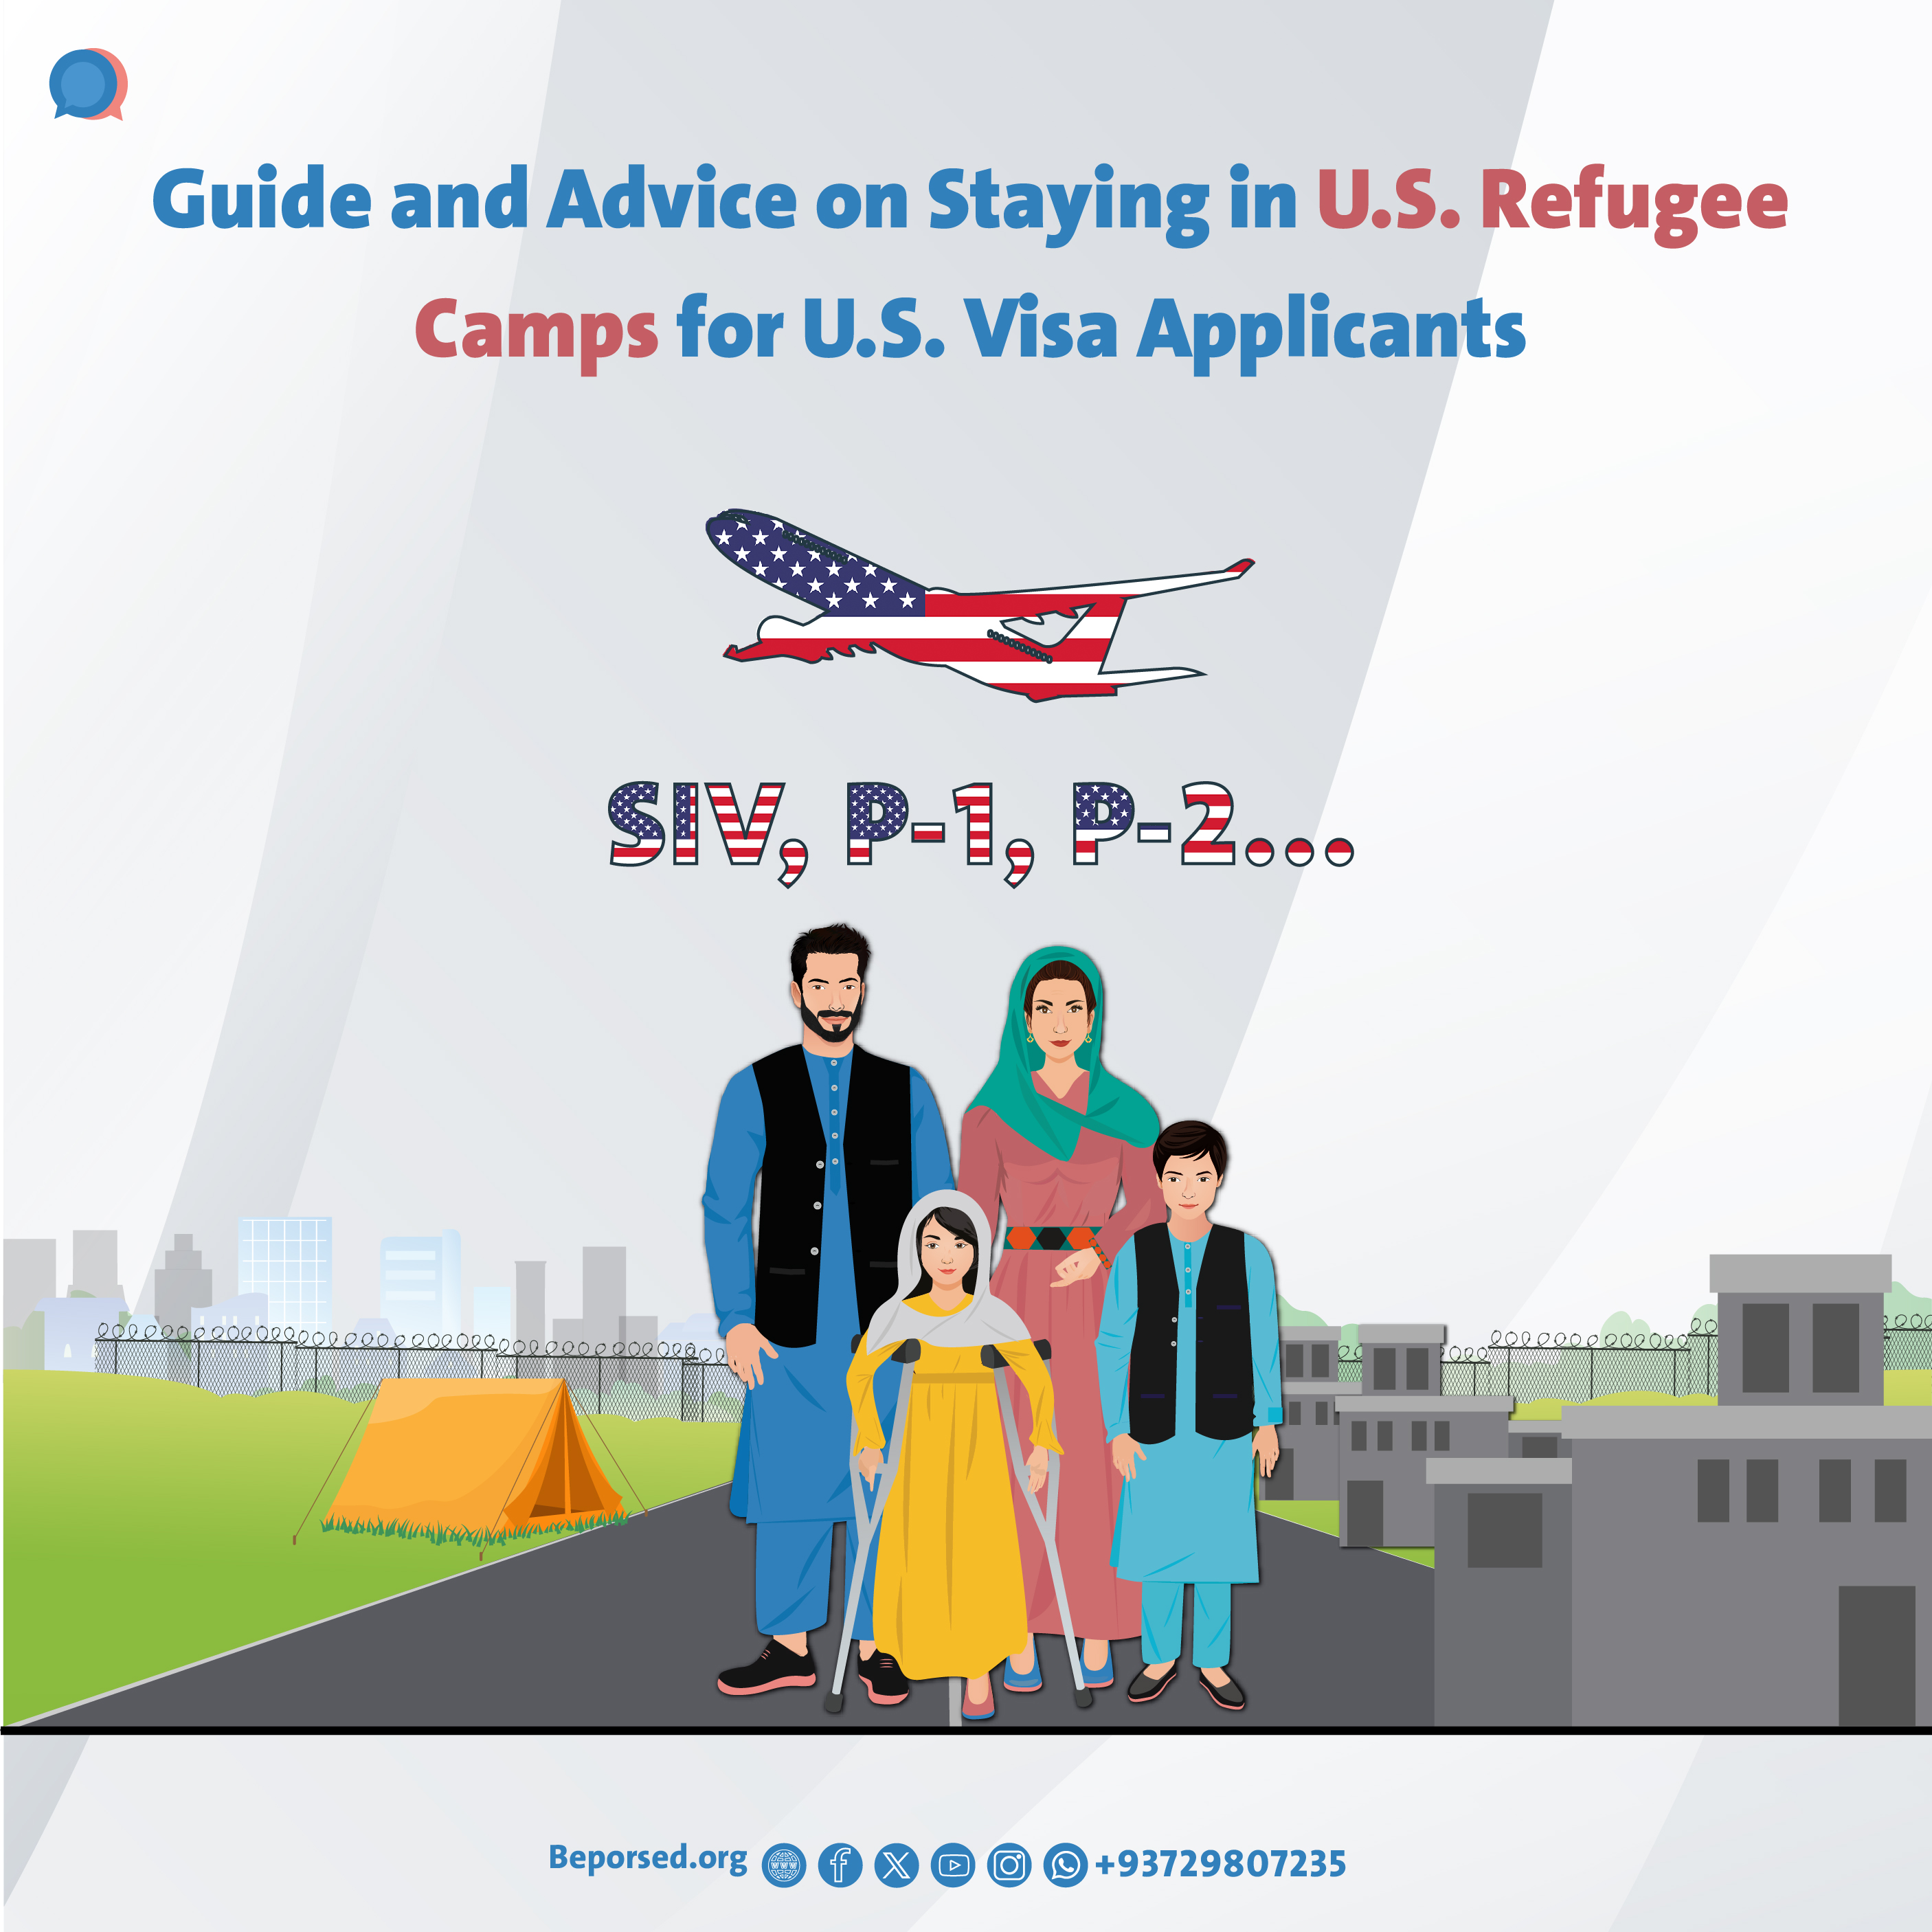 رهنمود و توصیه‌هایی در رابطه به اقامت در کمپ کشور سومی (U.S. Refugee Camps) برای متقاضیان ویزای ایالات متحده آمریکا-03.jpg